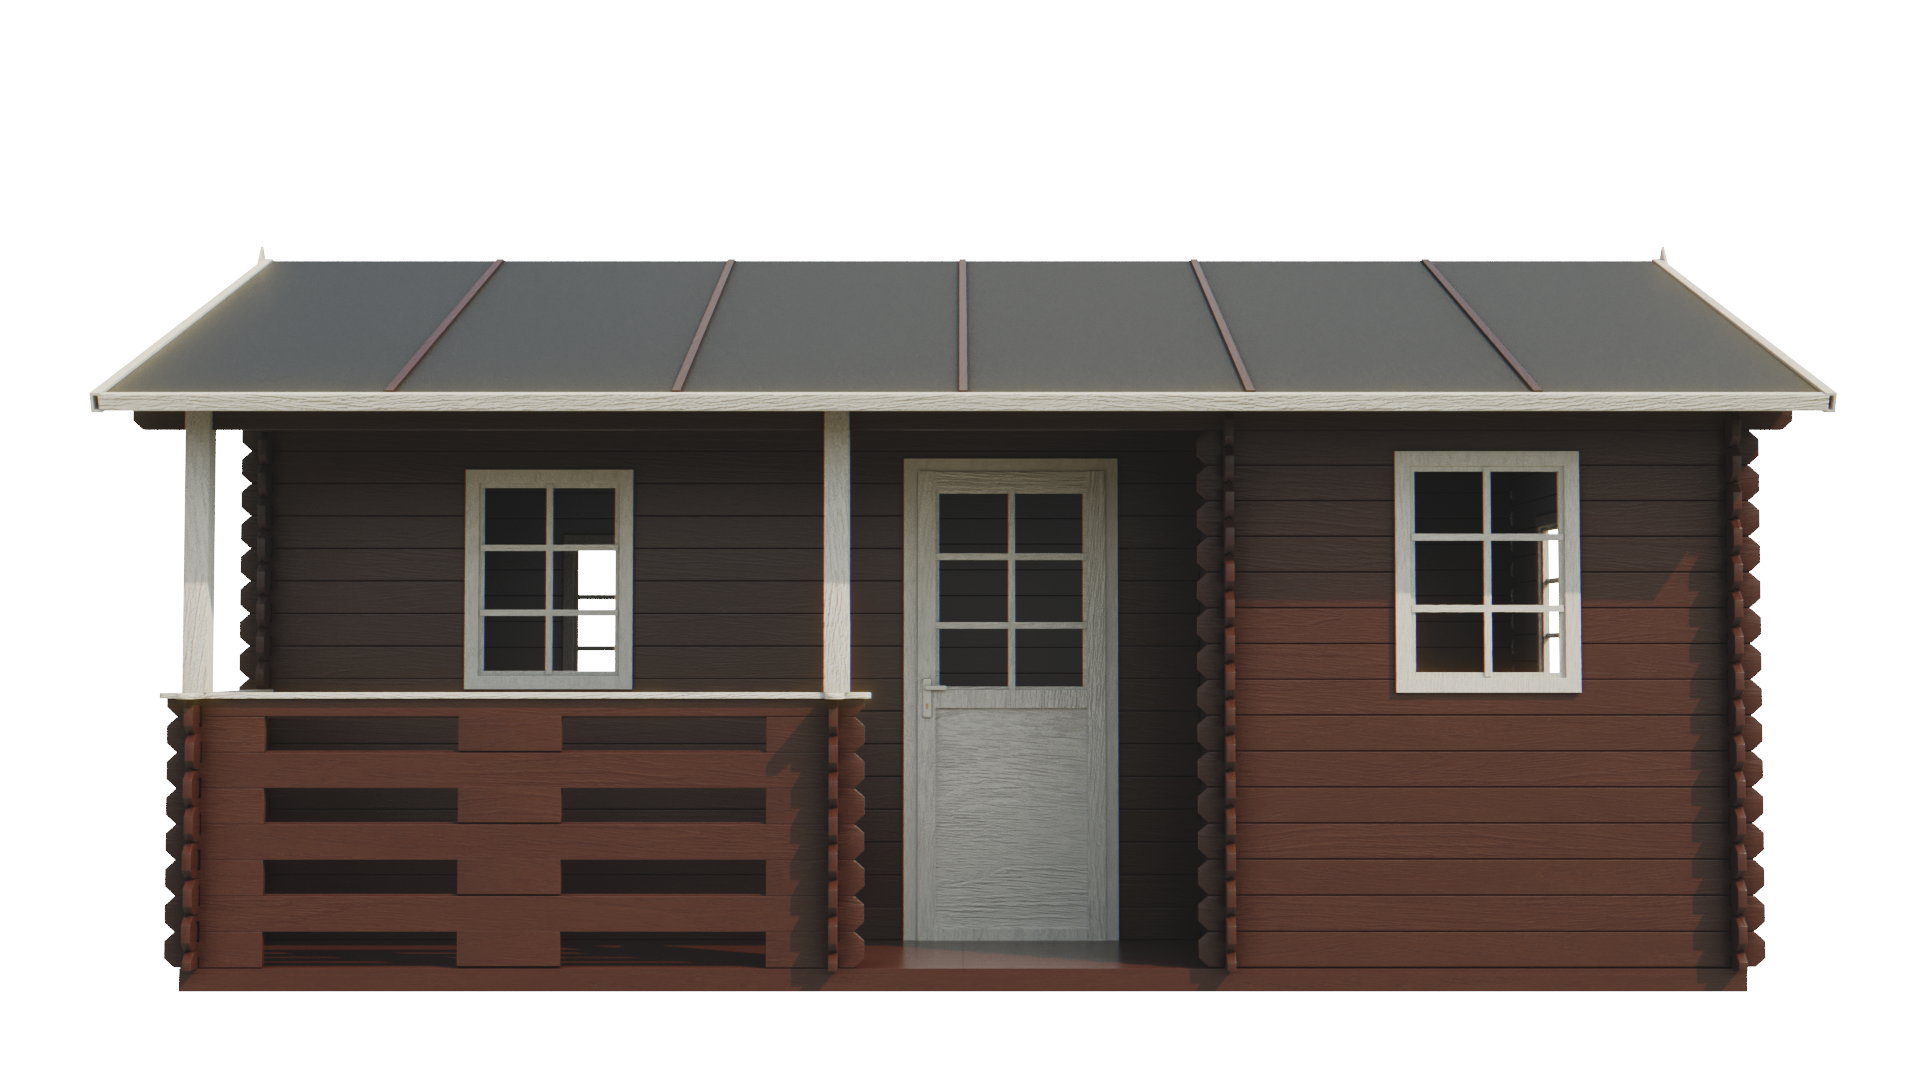 Záhradný drevený domček zrubový PALPLOMA 6,5 x 4,5m s verandou 4m2